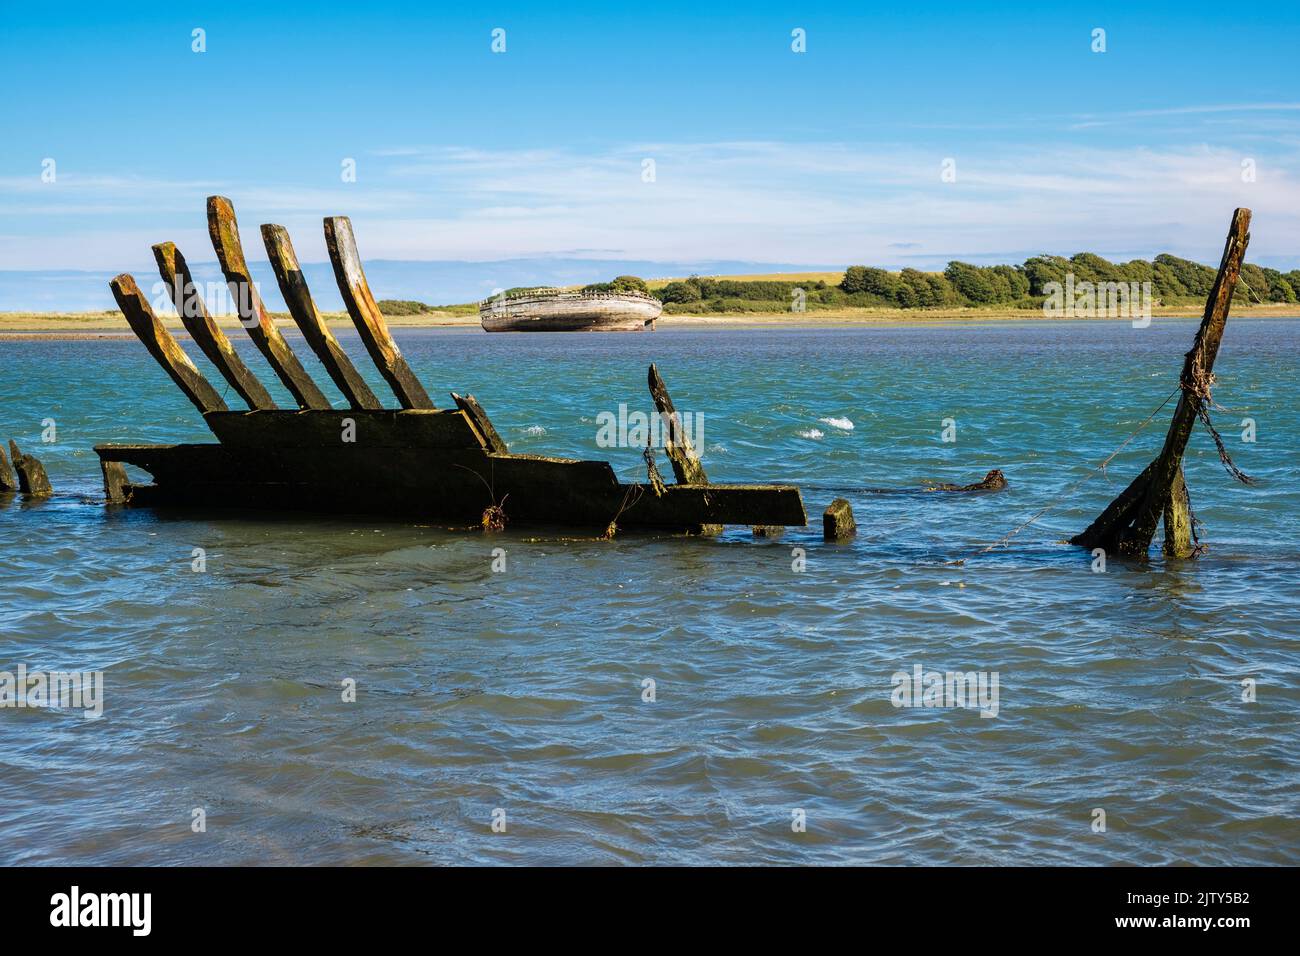 Restos de casco antiguo de madera de un naufragio con un barco naufragado más completo a través de la bahía. Traeth Dulas, Isla de Anglesey, Gales del Norte, Reino Unido, Gran Bretaña Foto de stock